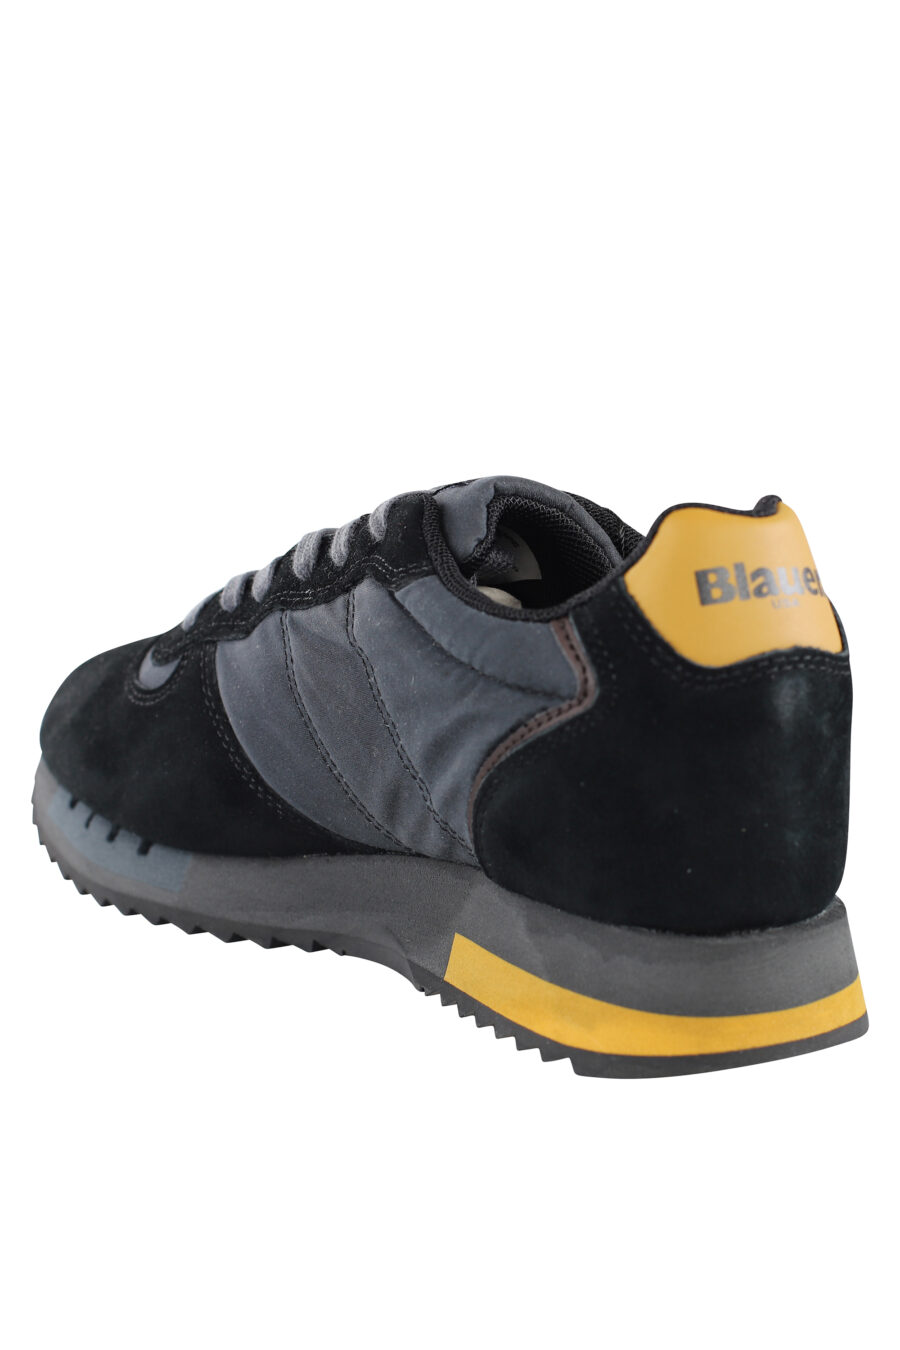 Zapatillas "queen" negras con detalles amarillos y logo - IMG 7085